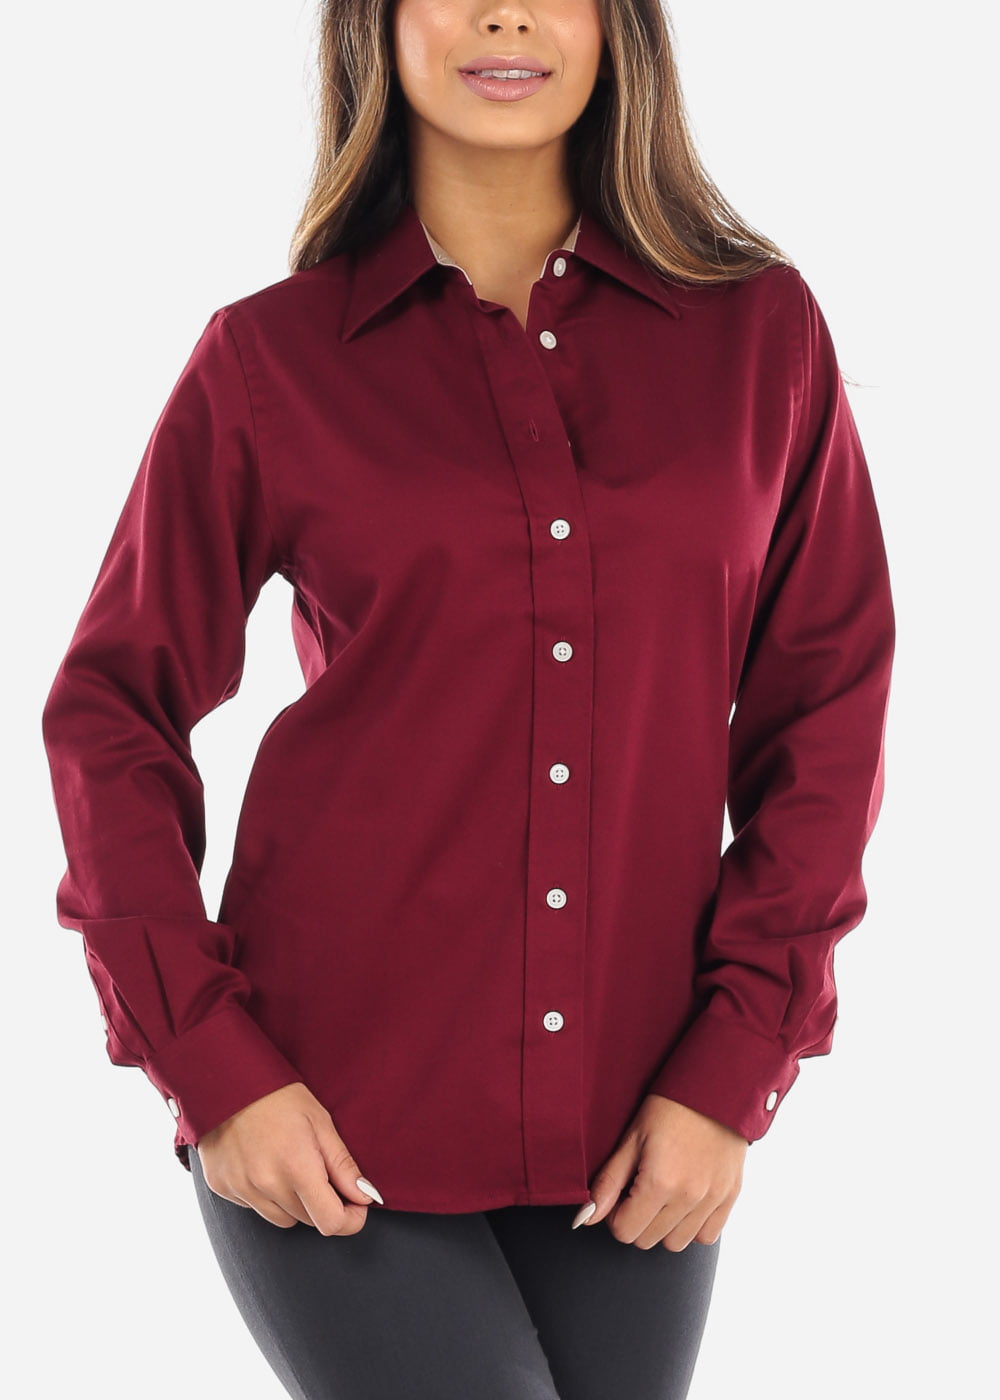 burgundy dress shirt womens